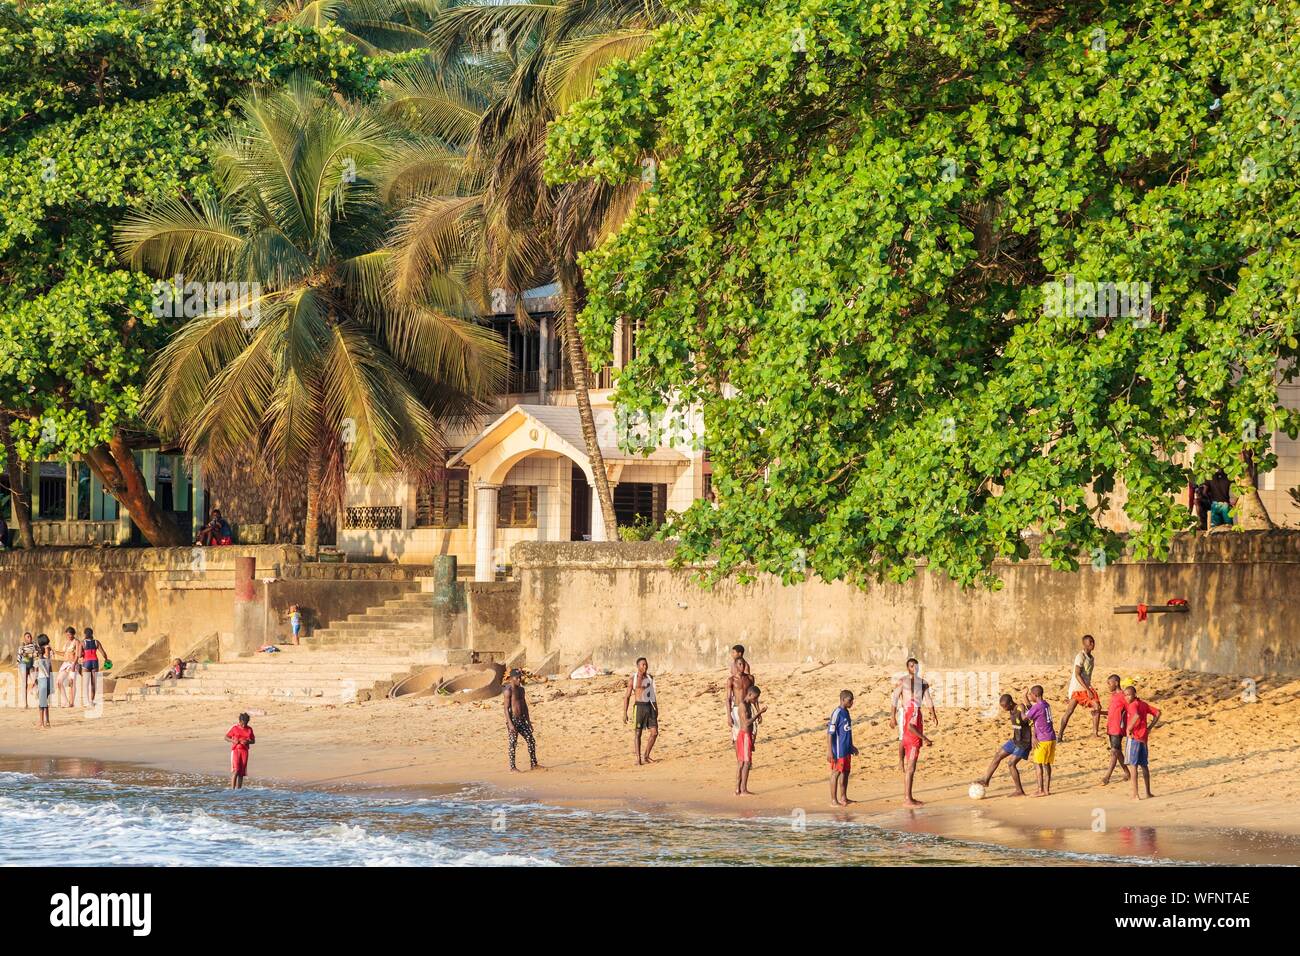 Cameroun, région Sud, Ministère de l'océan, Kribi, garçons africains jouant au football sur la plage Banque D'Images